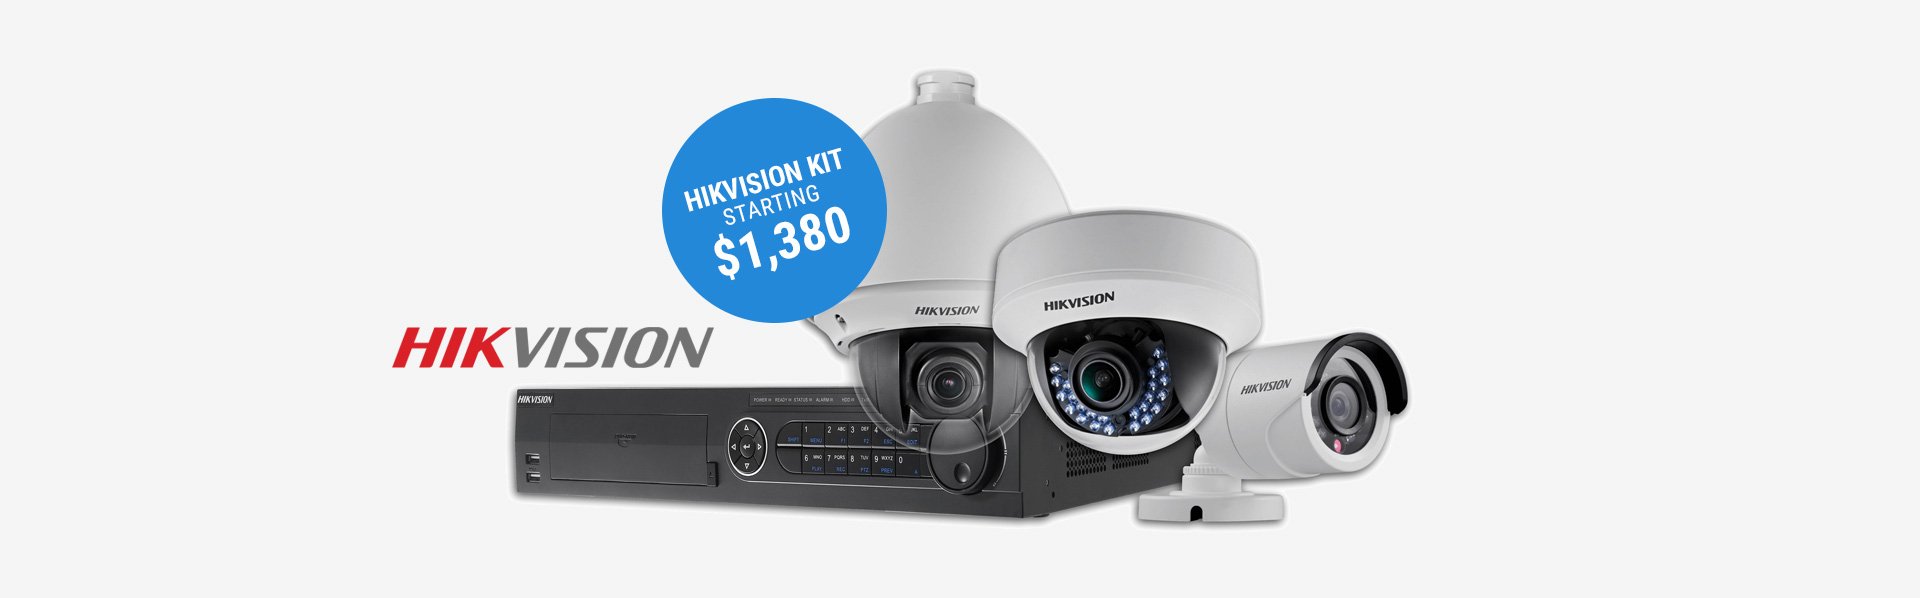 Hikvision CCTV kit